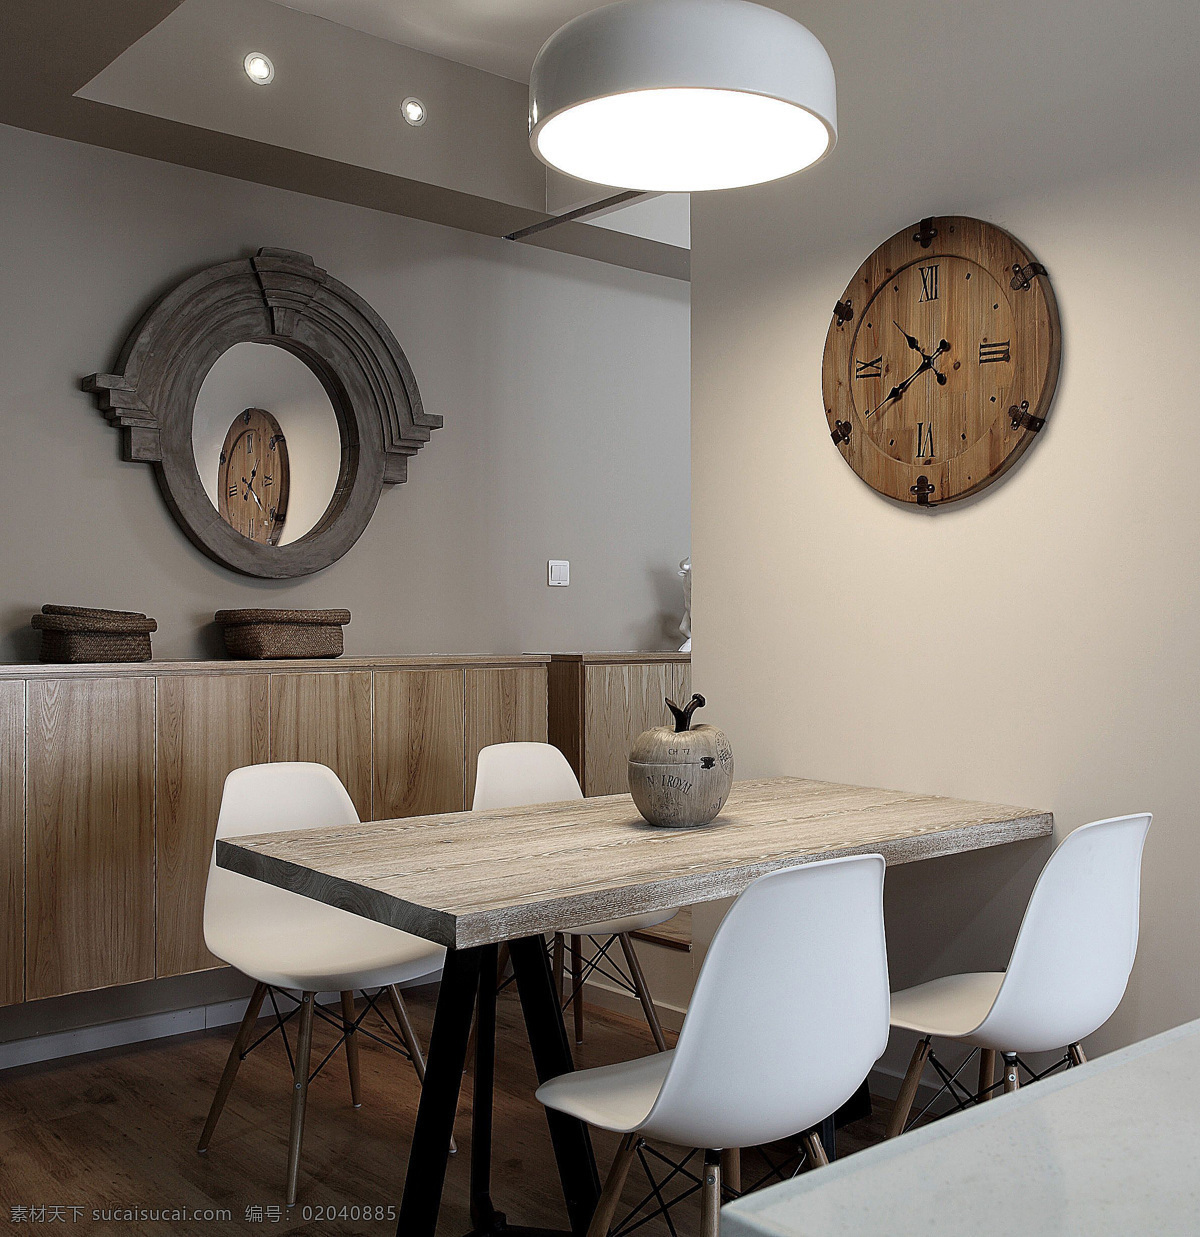 现代 时尚 客厅 白色 壁灯 室内装修 效果图 白色椅子 客厅装修 木制餐桌 浅色背景墙